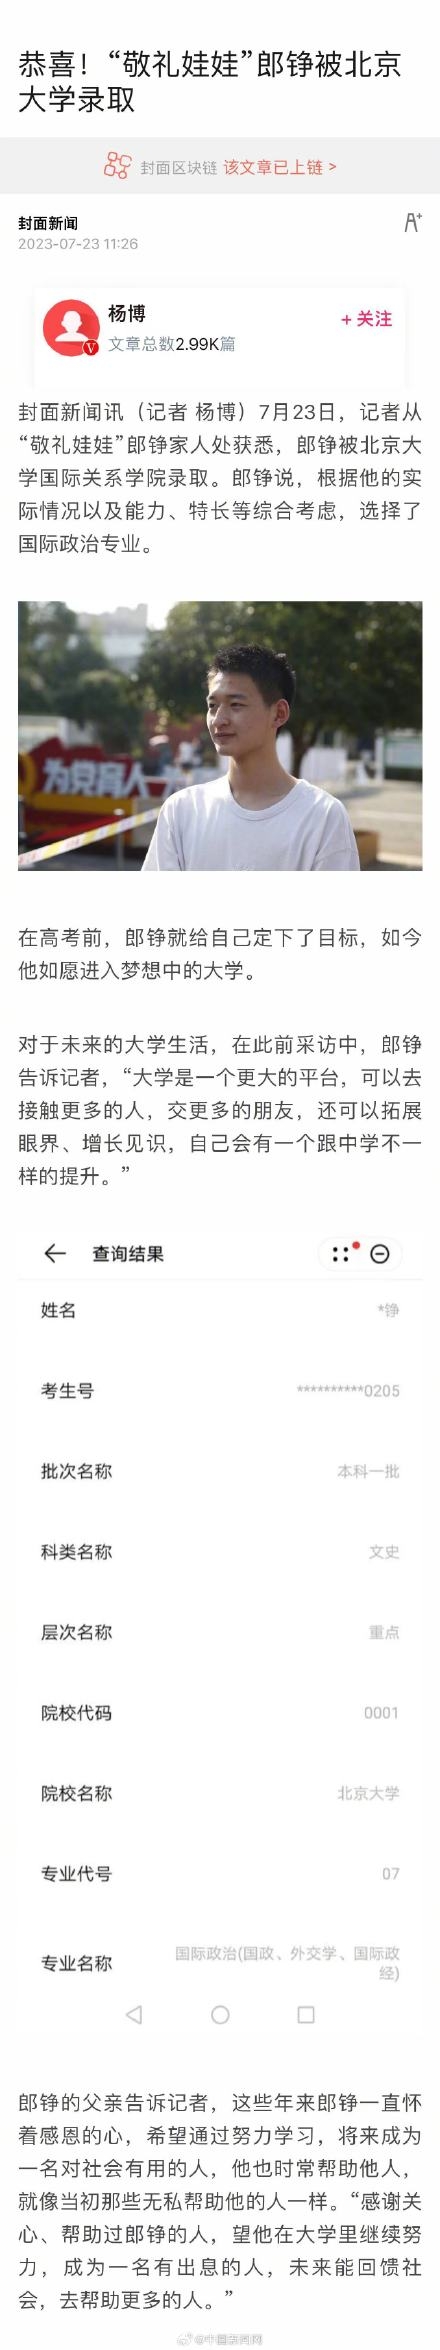 7月23日，记者从“敬礼娃娃”郎铮家人处获悉，郎铮被北京大学国际关系学院录取。郎铮说，根据他的实际情况以及能力、特长等综合考虑，选择了国际政治专业。在高考前，郎铮就给